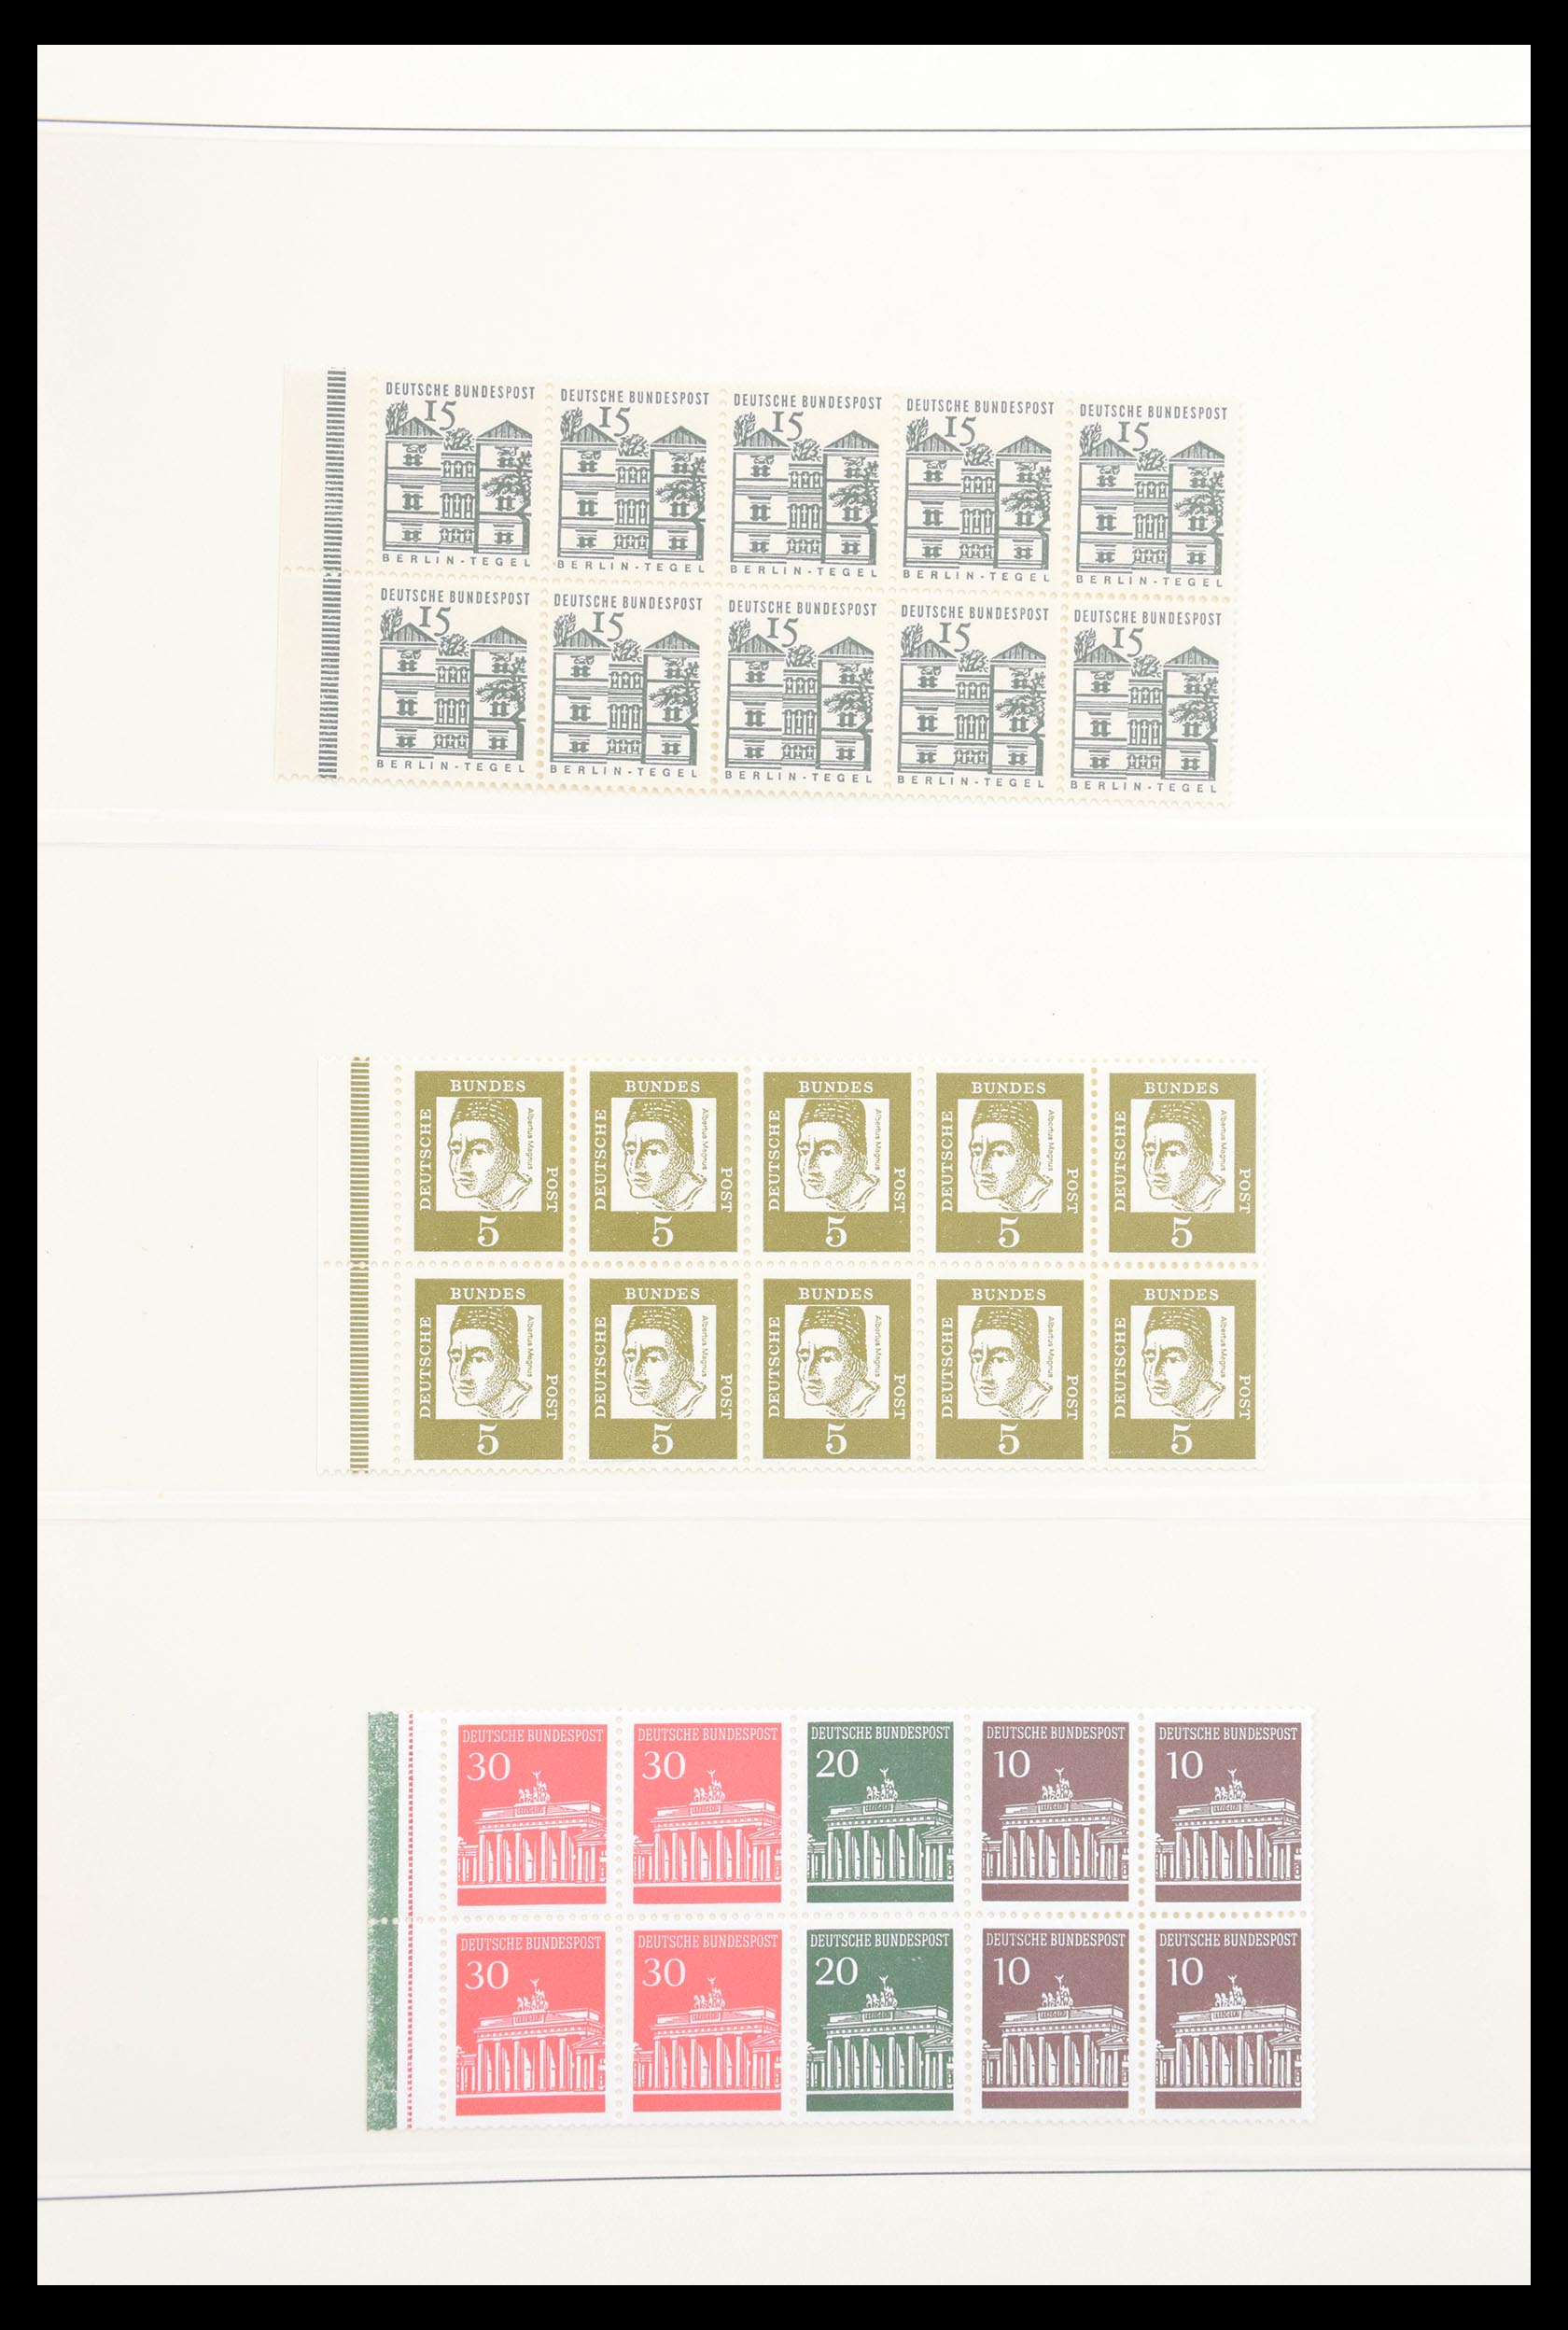 30605 041 - 30605 Bundespost combinaties 1951-1974.